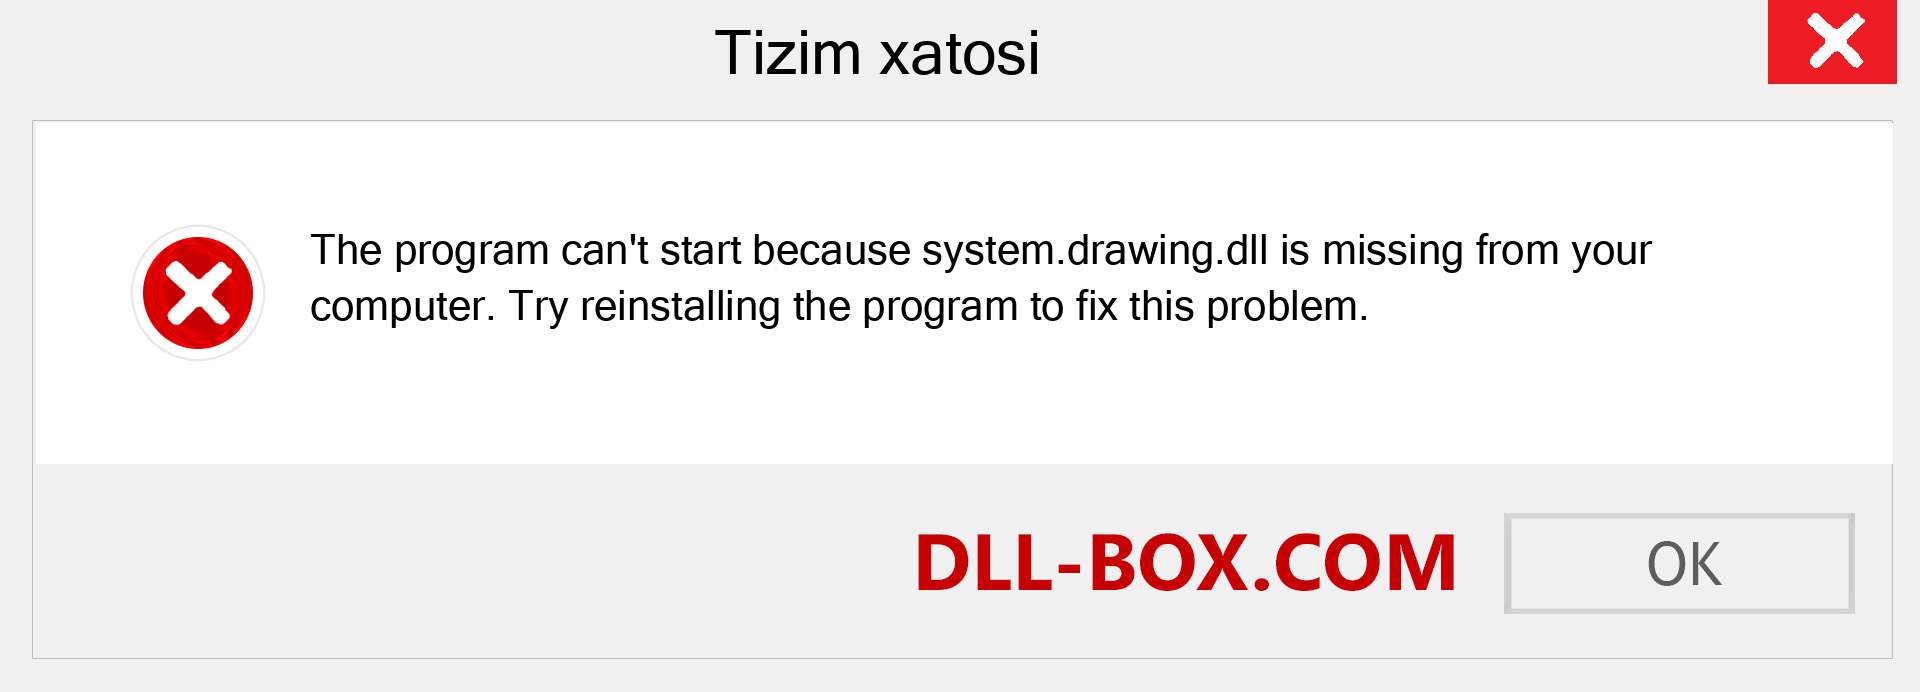 system.drawing.dll fayli yo'qolganmi?. Windows 7, 8, 10 uchun yuklab olish - Windowsda system.drawing dll etishmayotgan xatoni tuzating, rasmlar, rasmlar